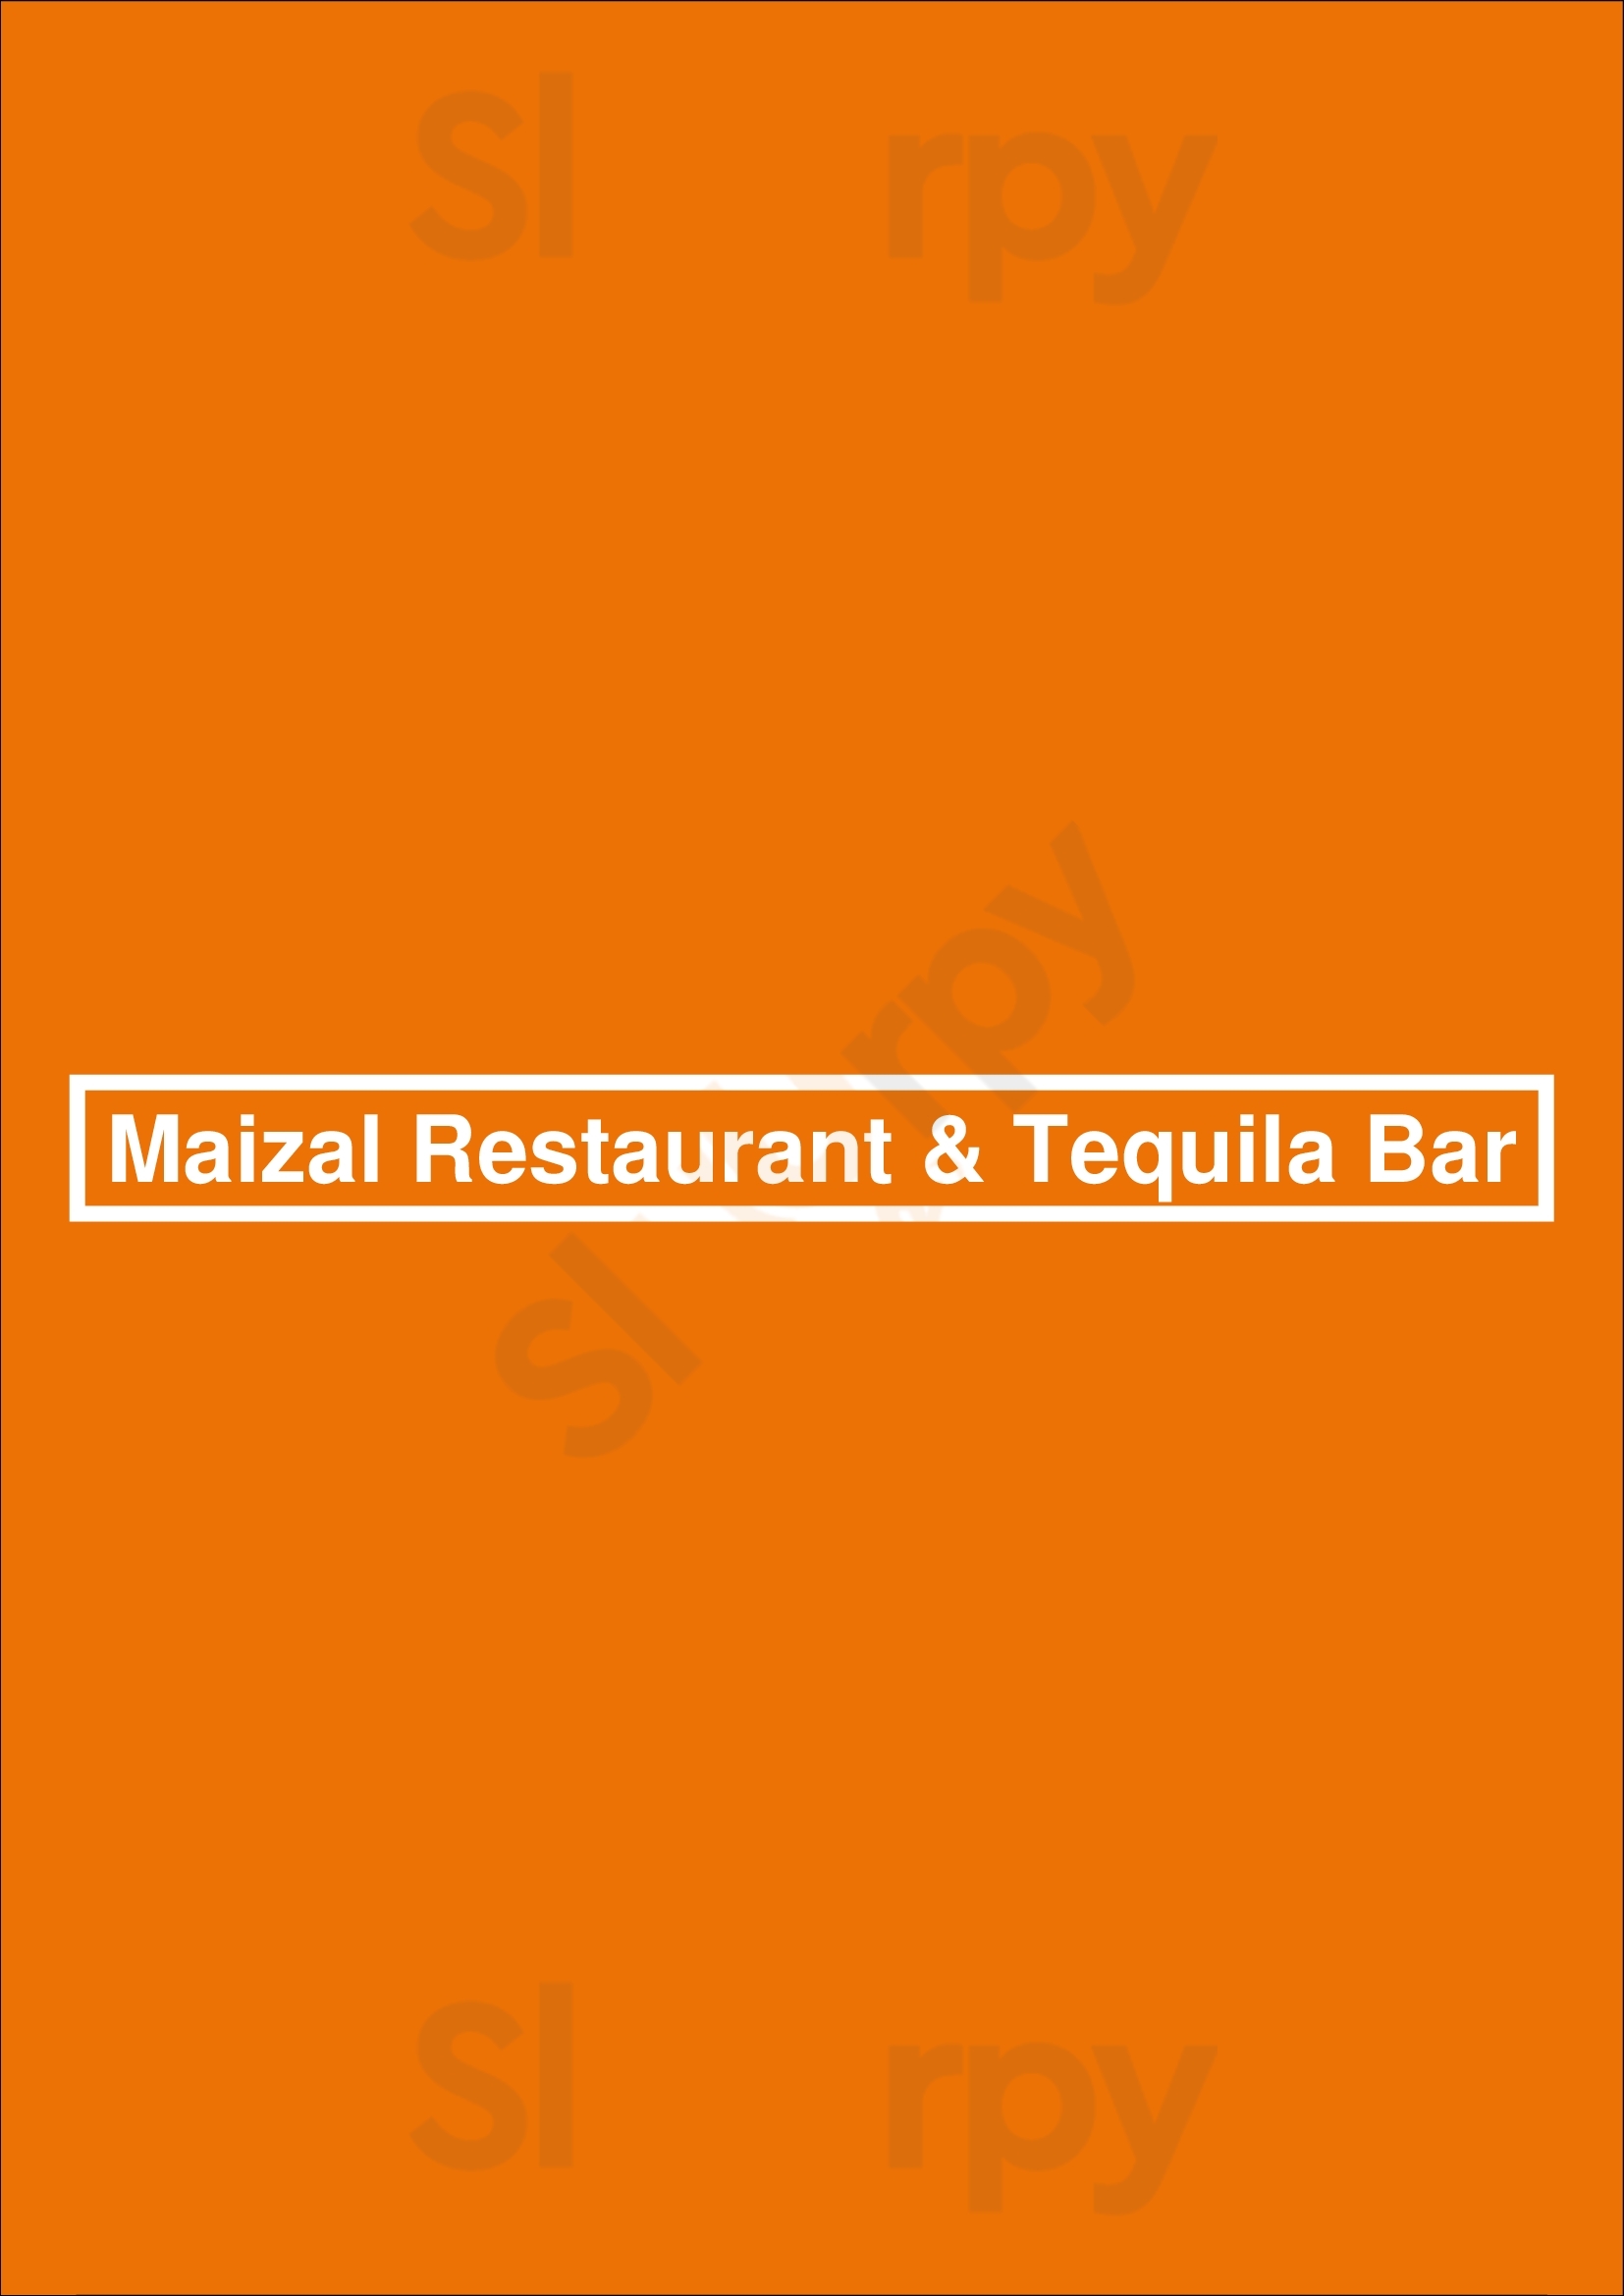 Maizal Restaurant & Tequila Bar Astoria Menu - 1